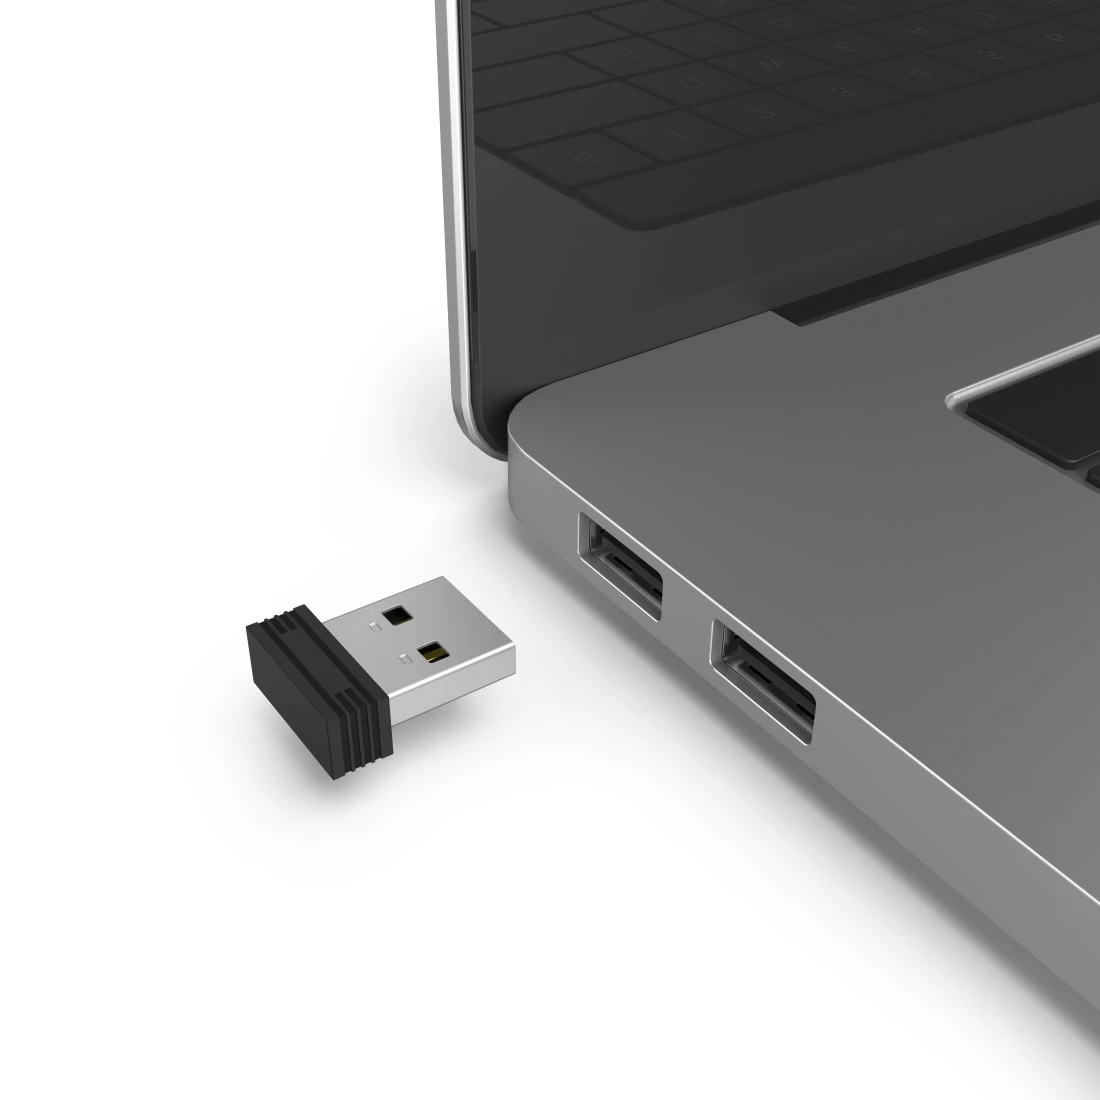 SOURIS SANS FIL OPTIQUE HAMA USB-C ET USB-A MW-600 - NOIR